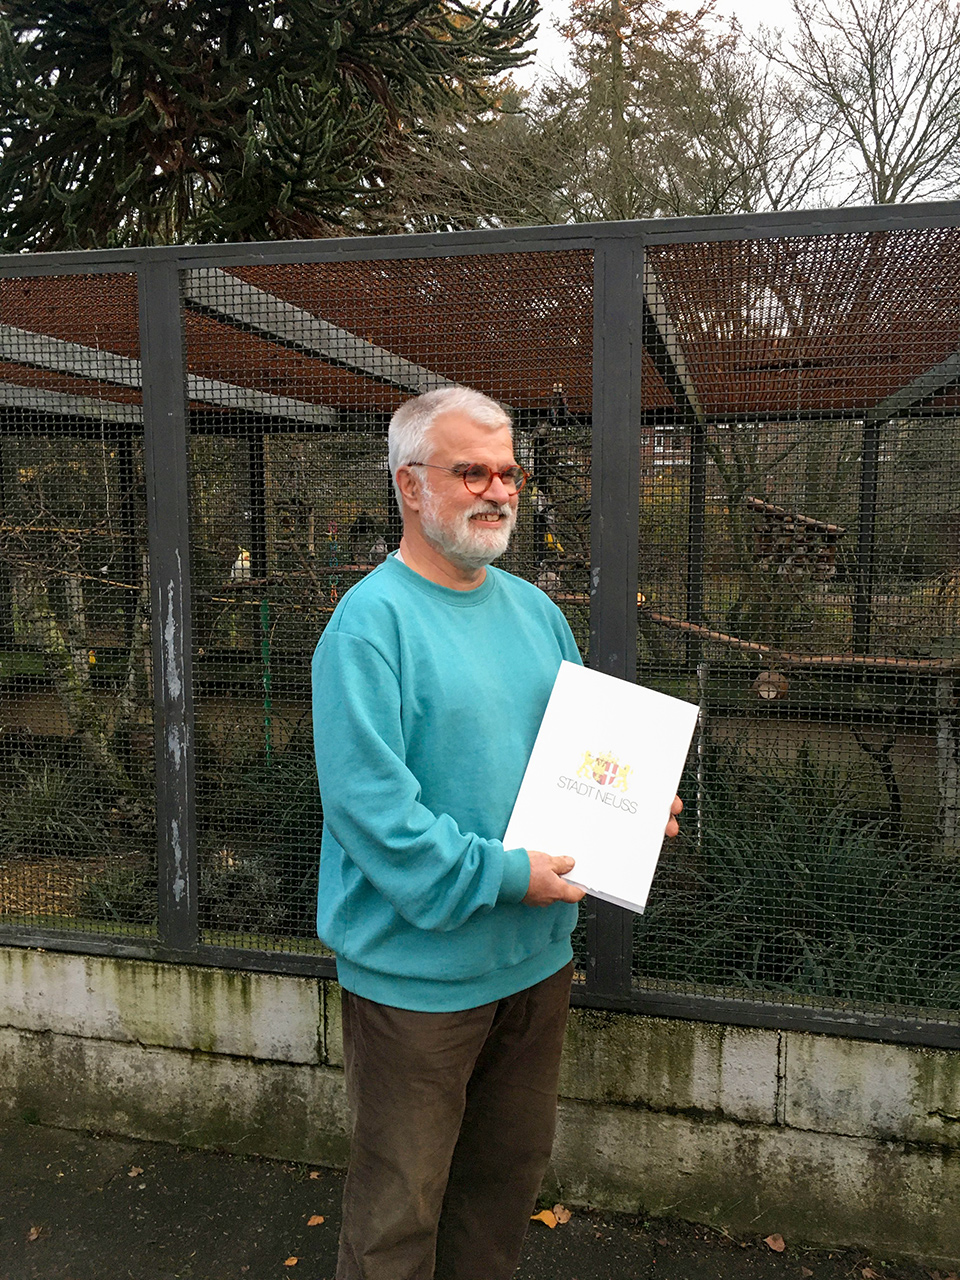 Gärtner Reinhard Gremmer vor der Vogelvoliere. Er lächelt und hält eine Mappe mit der Urkunde für seine 40 Dienstjahre in den Händen.